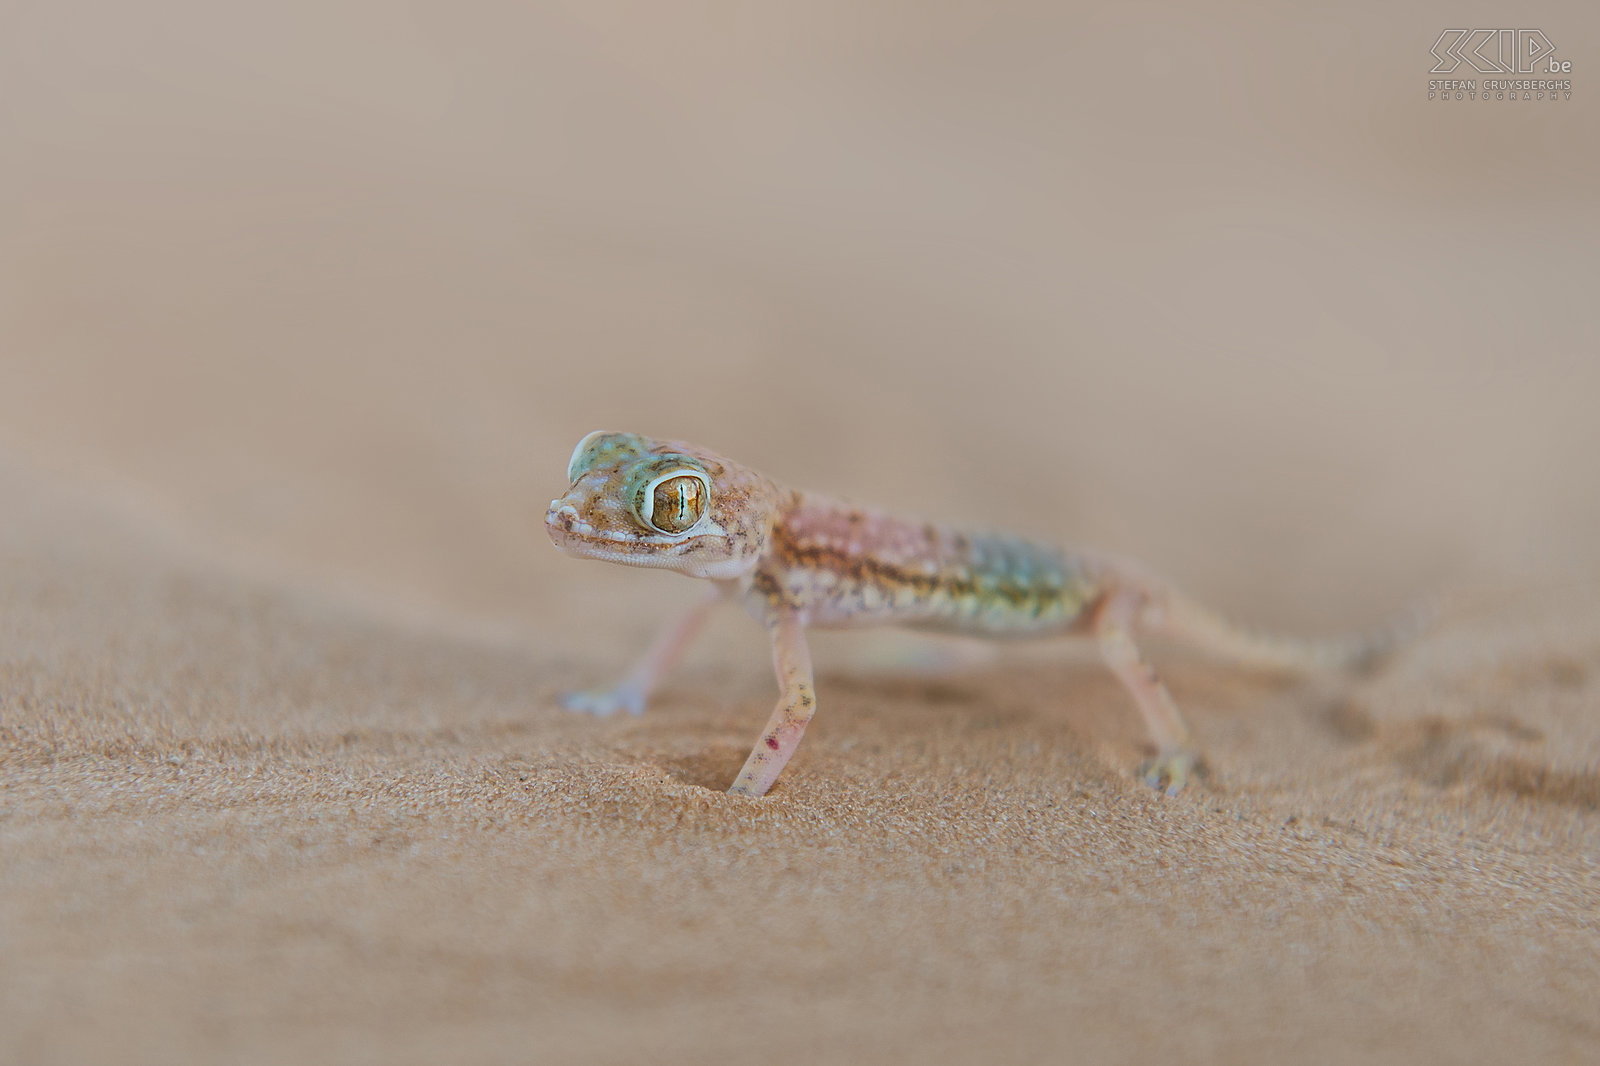 Zand gekko Tijdens onze laatste ochtend in de woestijn vond ik een prachtige kleine hagedis. Dit beestje is een Zand gekko/Dunvingergekko (Stenodactylus petrii) en het is maar 5cm lang. Stefan Cruysberghs